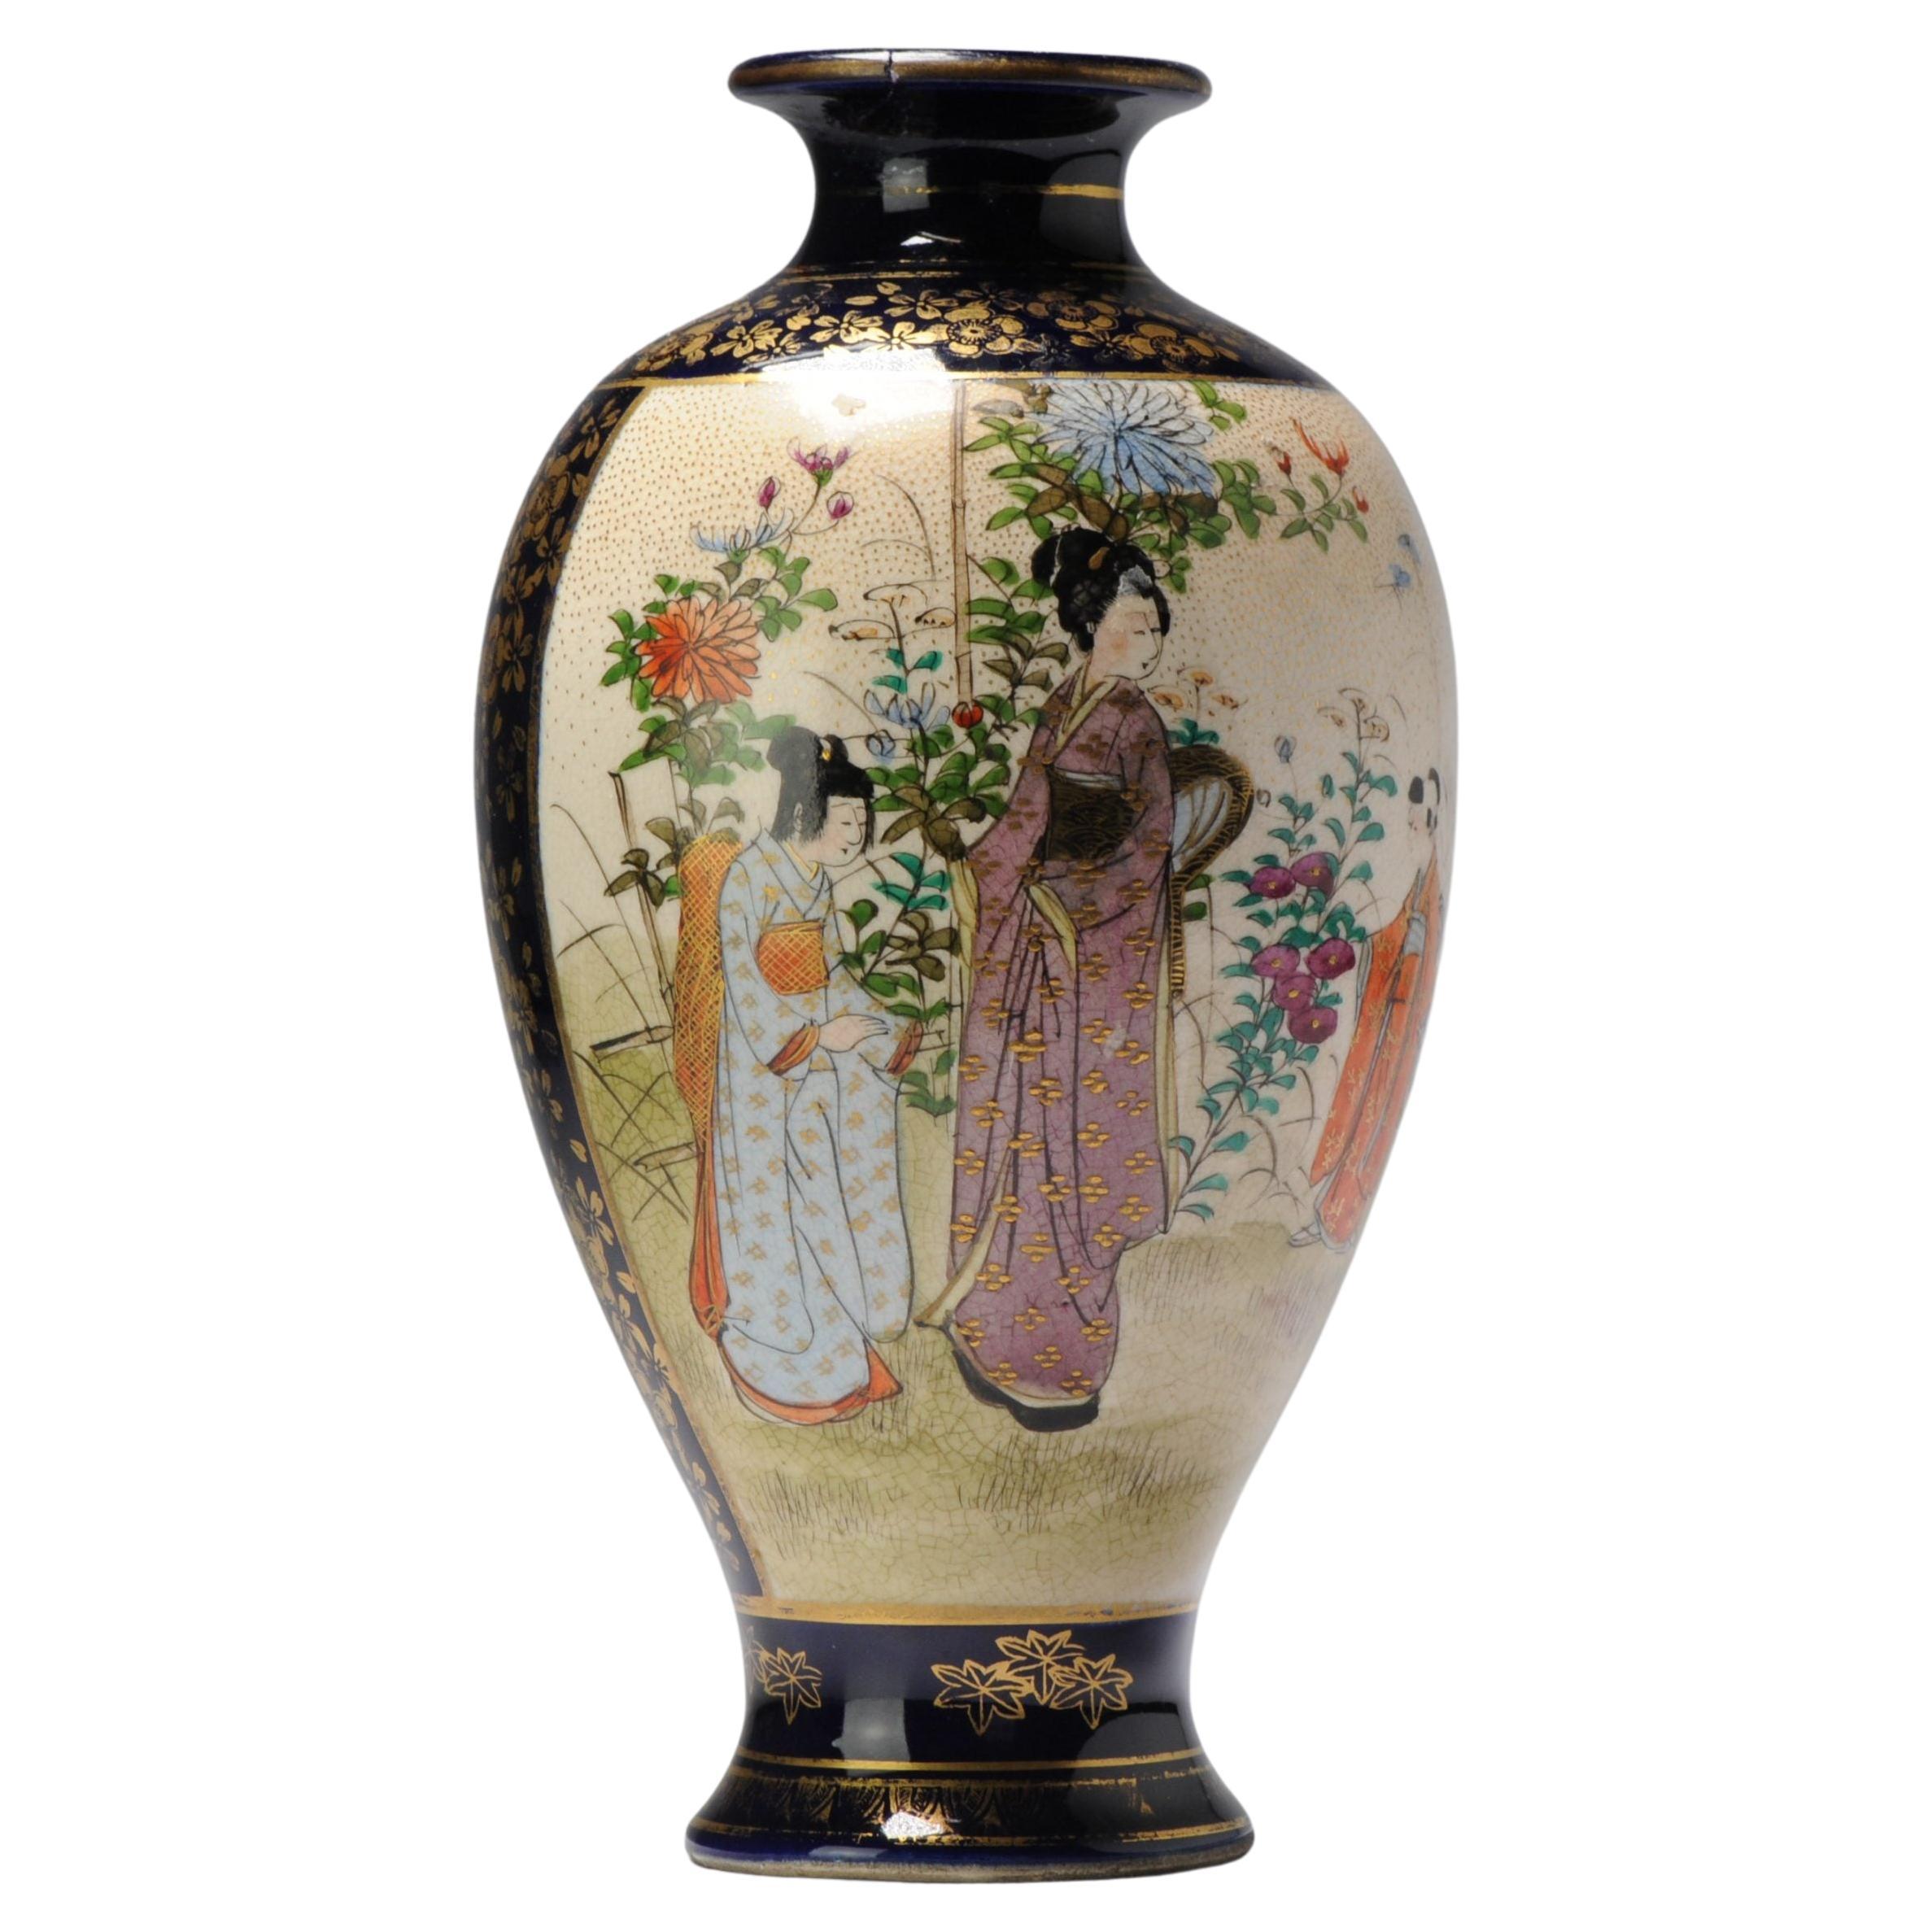 Antike japanische Satsuma-Vase aus der Zeit um 1900, reich verziert, markiert